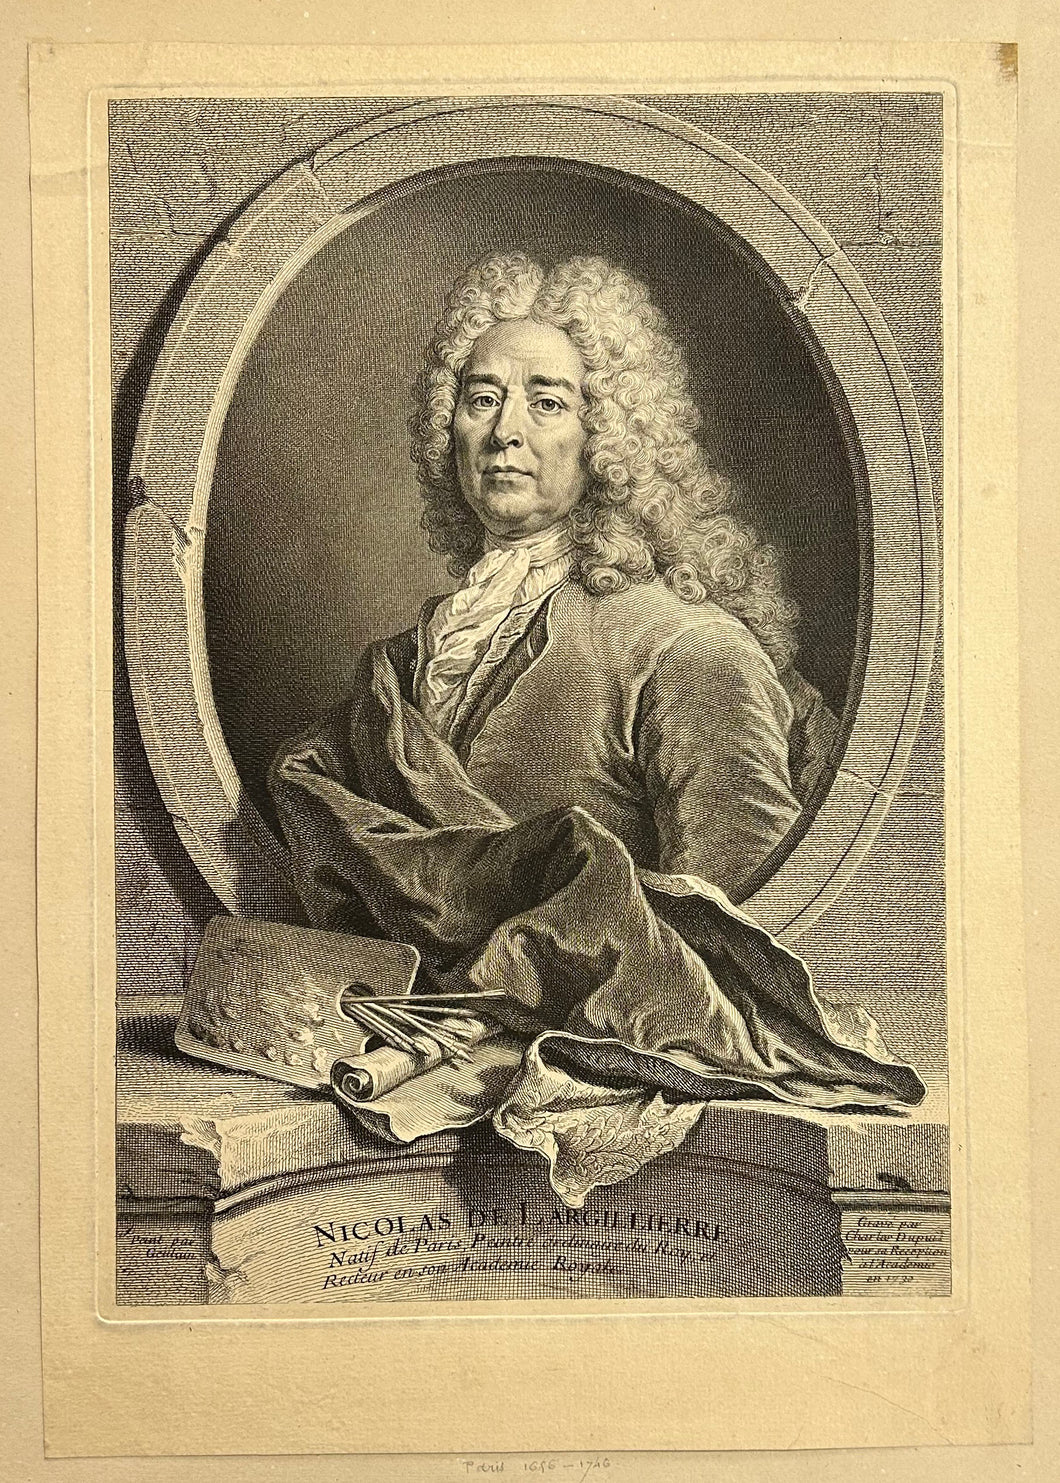 Portrait de Nicolas de Largillière (1656-1746), natif de Paris, Peintre ordinaire du Roy et Recteur en son Académie Royale.  1730.